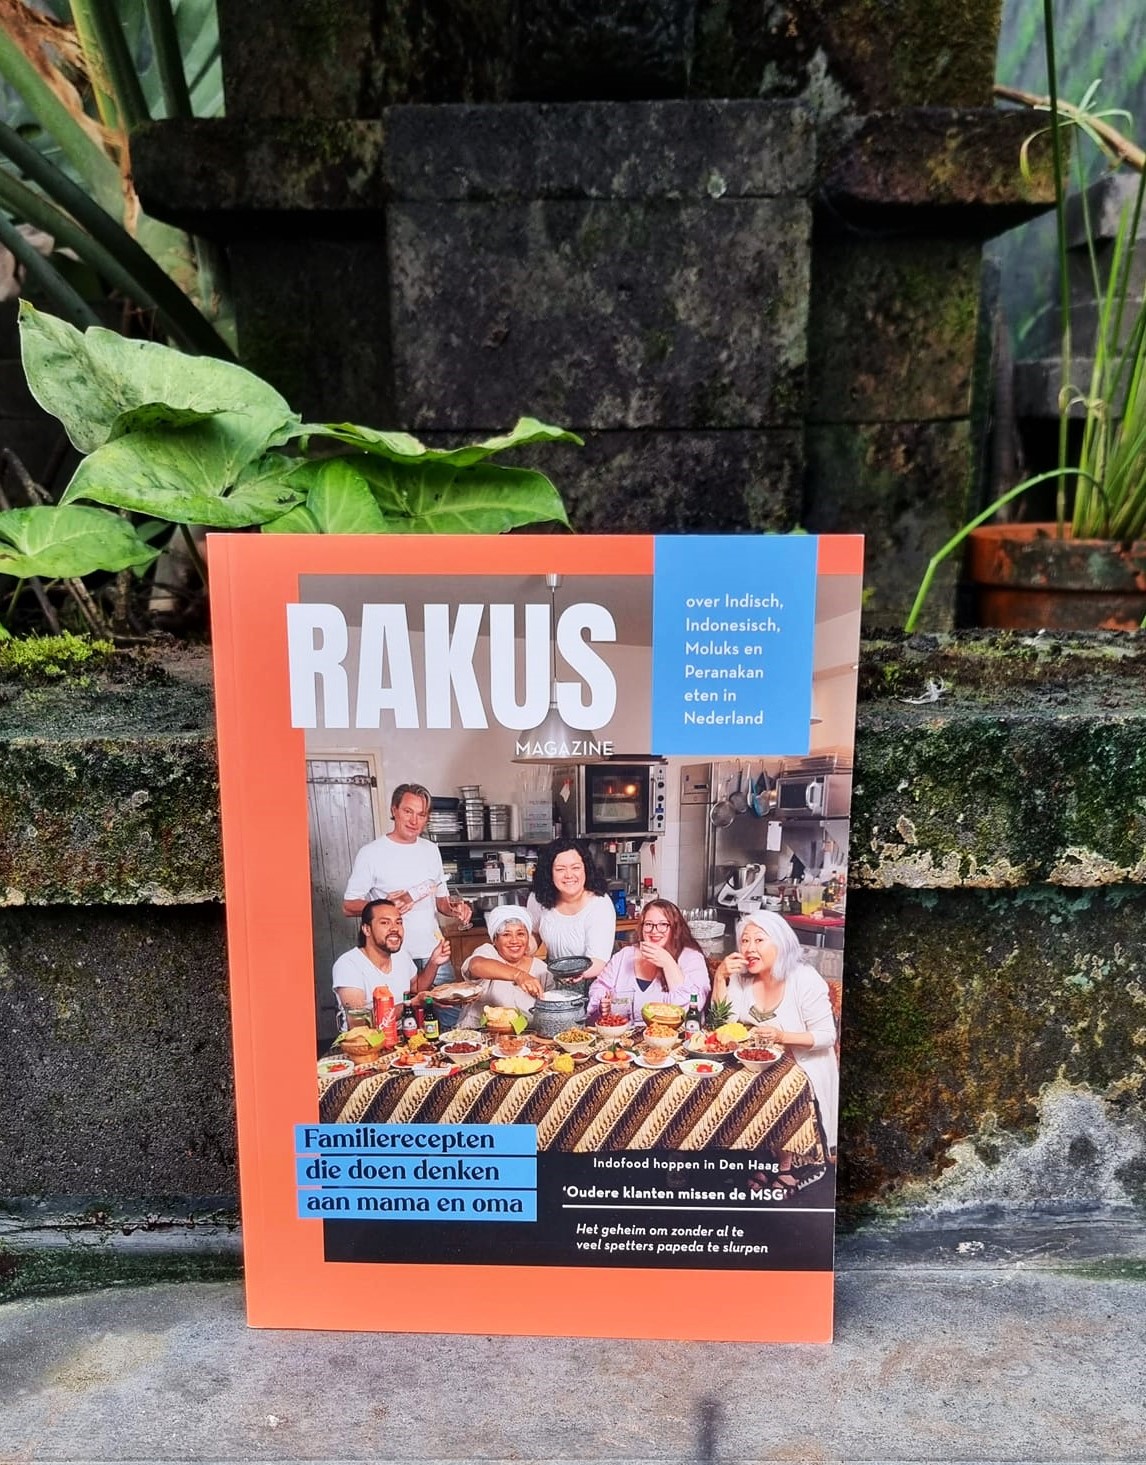 Een heerlijk bomvol magazine over Indofood. RAKUS Magazine is een culinair magazine over Indisch, Indonesisch, Moluks en Peranakan eten in Nederland. Een ideaal kerstkadootje voor de Indische lekkerbek!